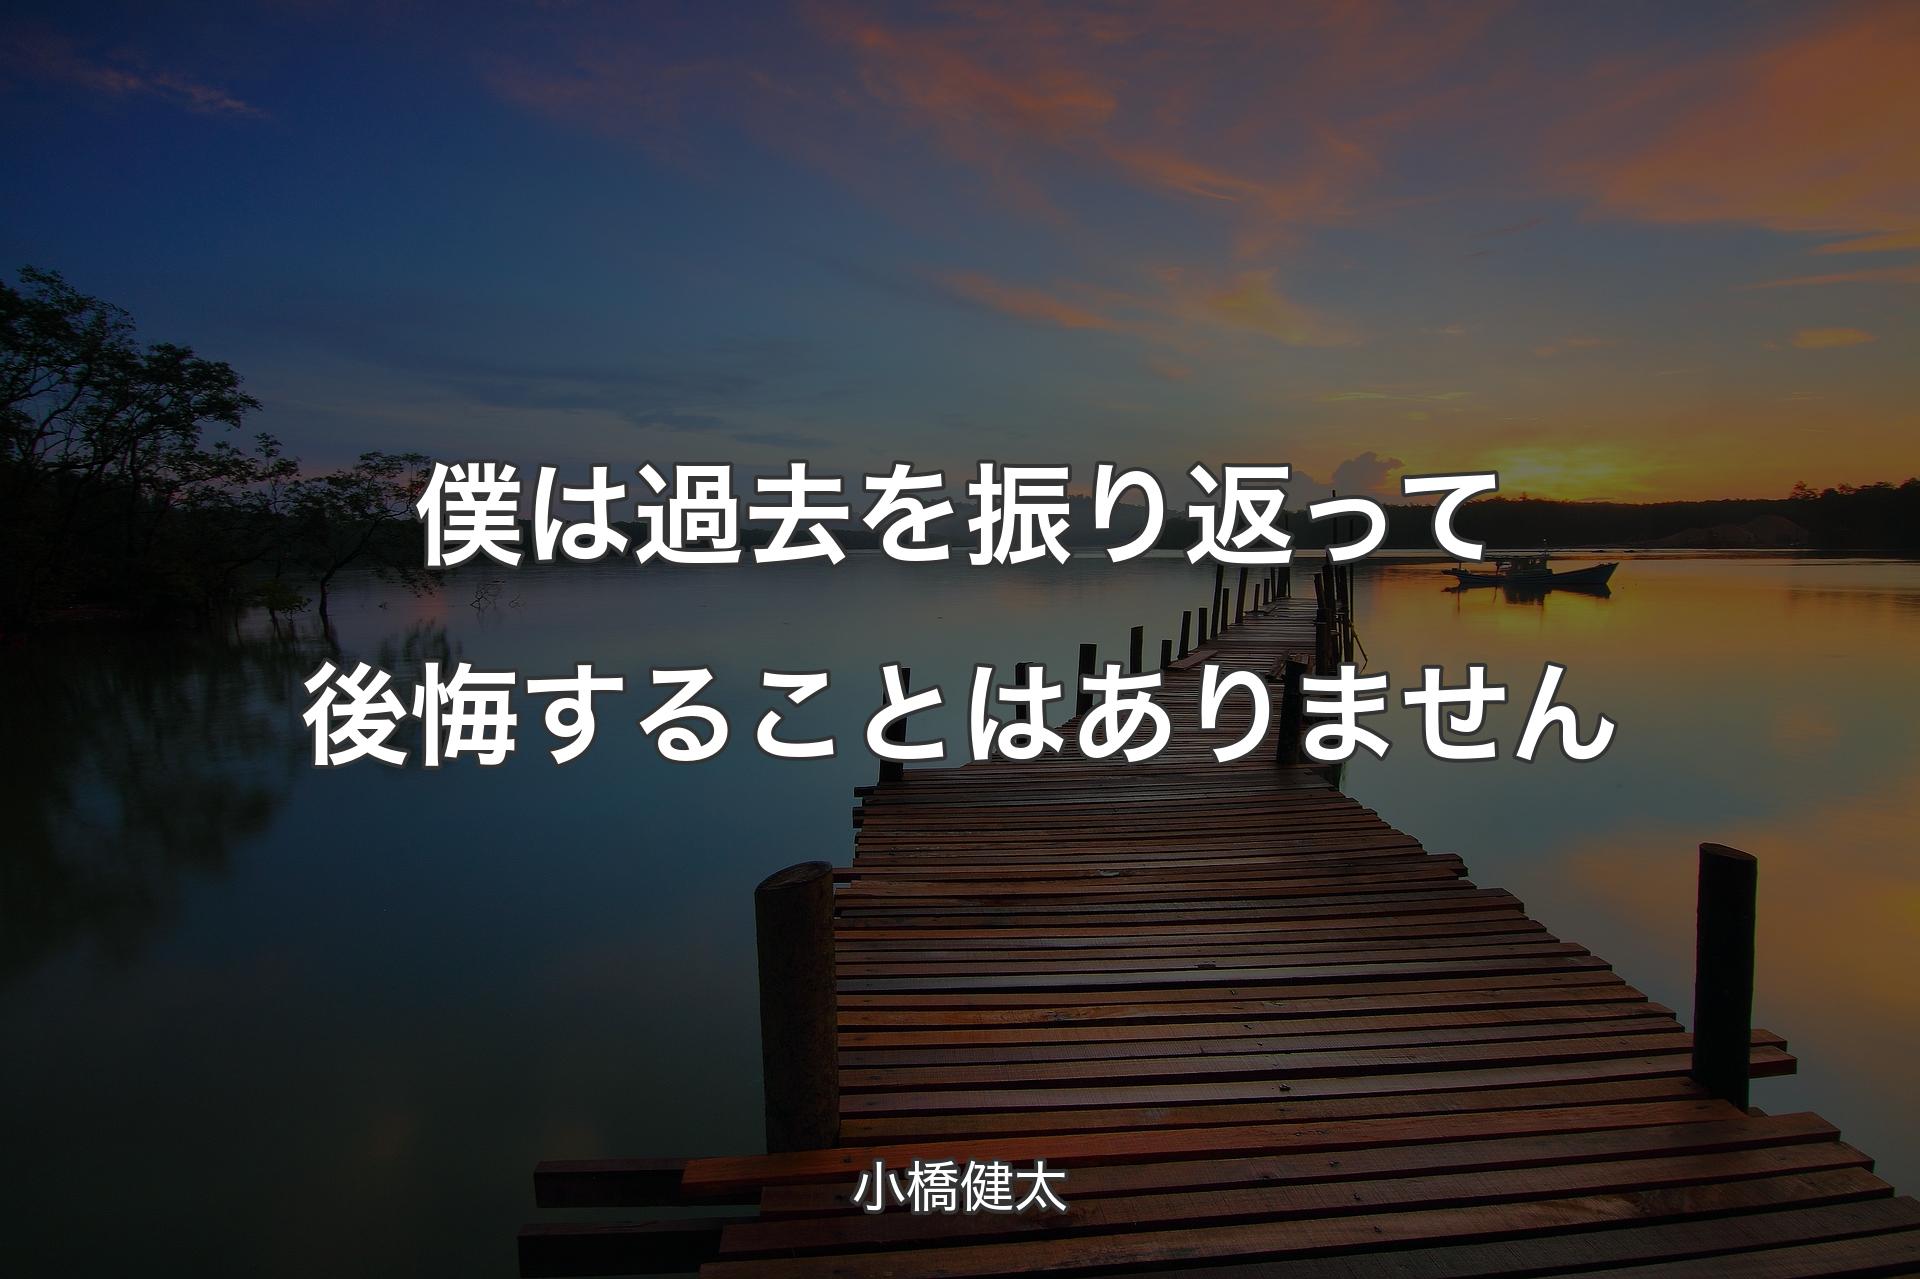 【背景3】僕は過去を振り返って後悔することはありません - 小橋健太